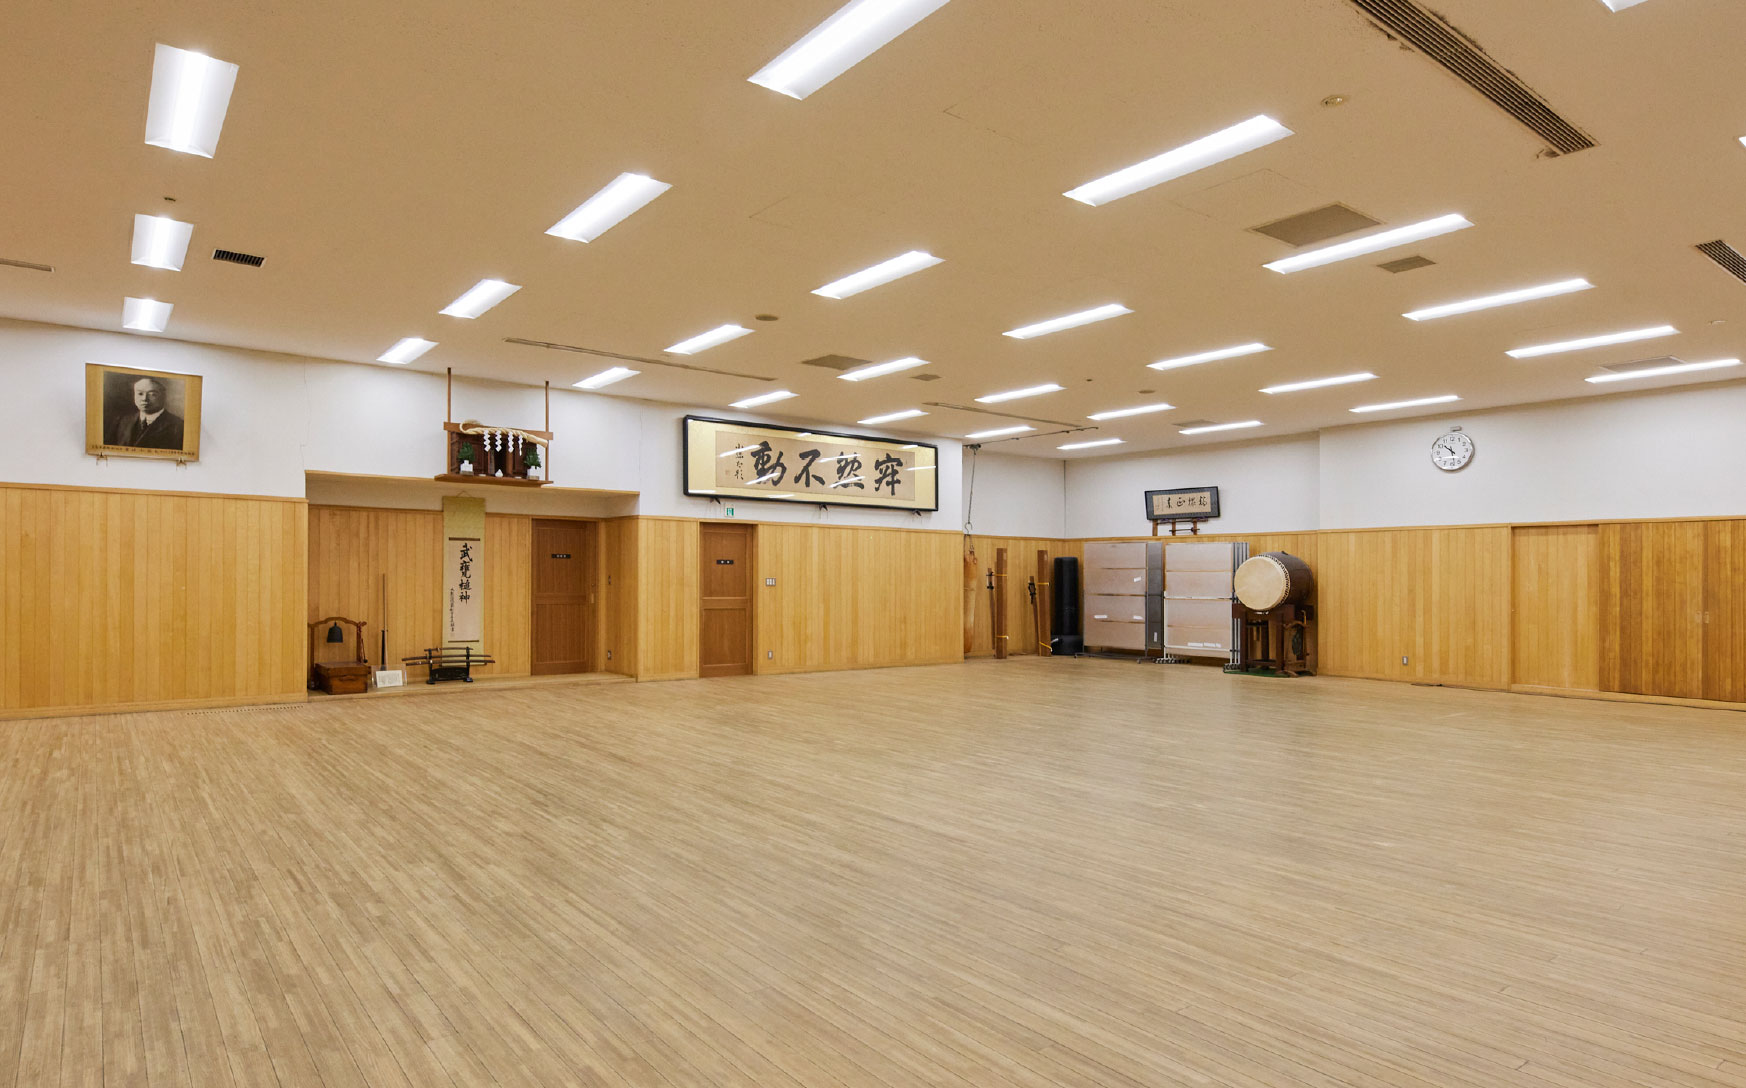 First floor dojo (wooden floor)